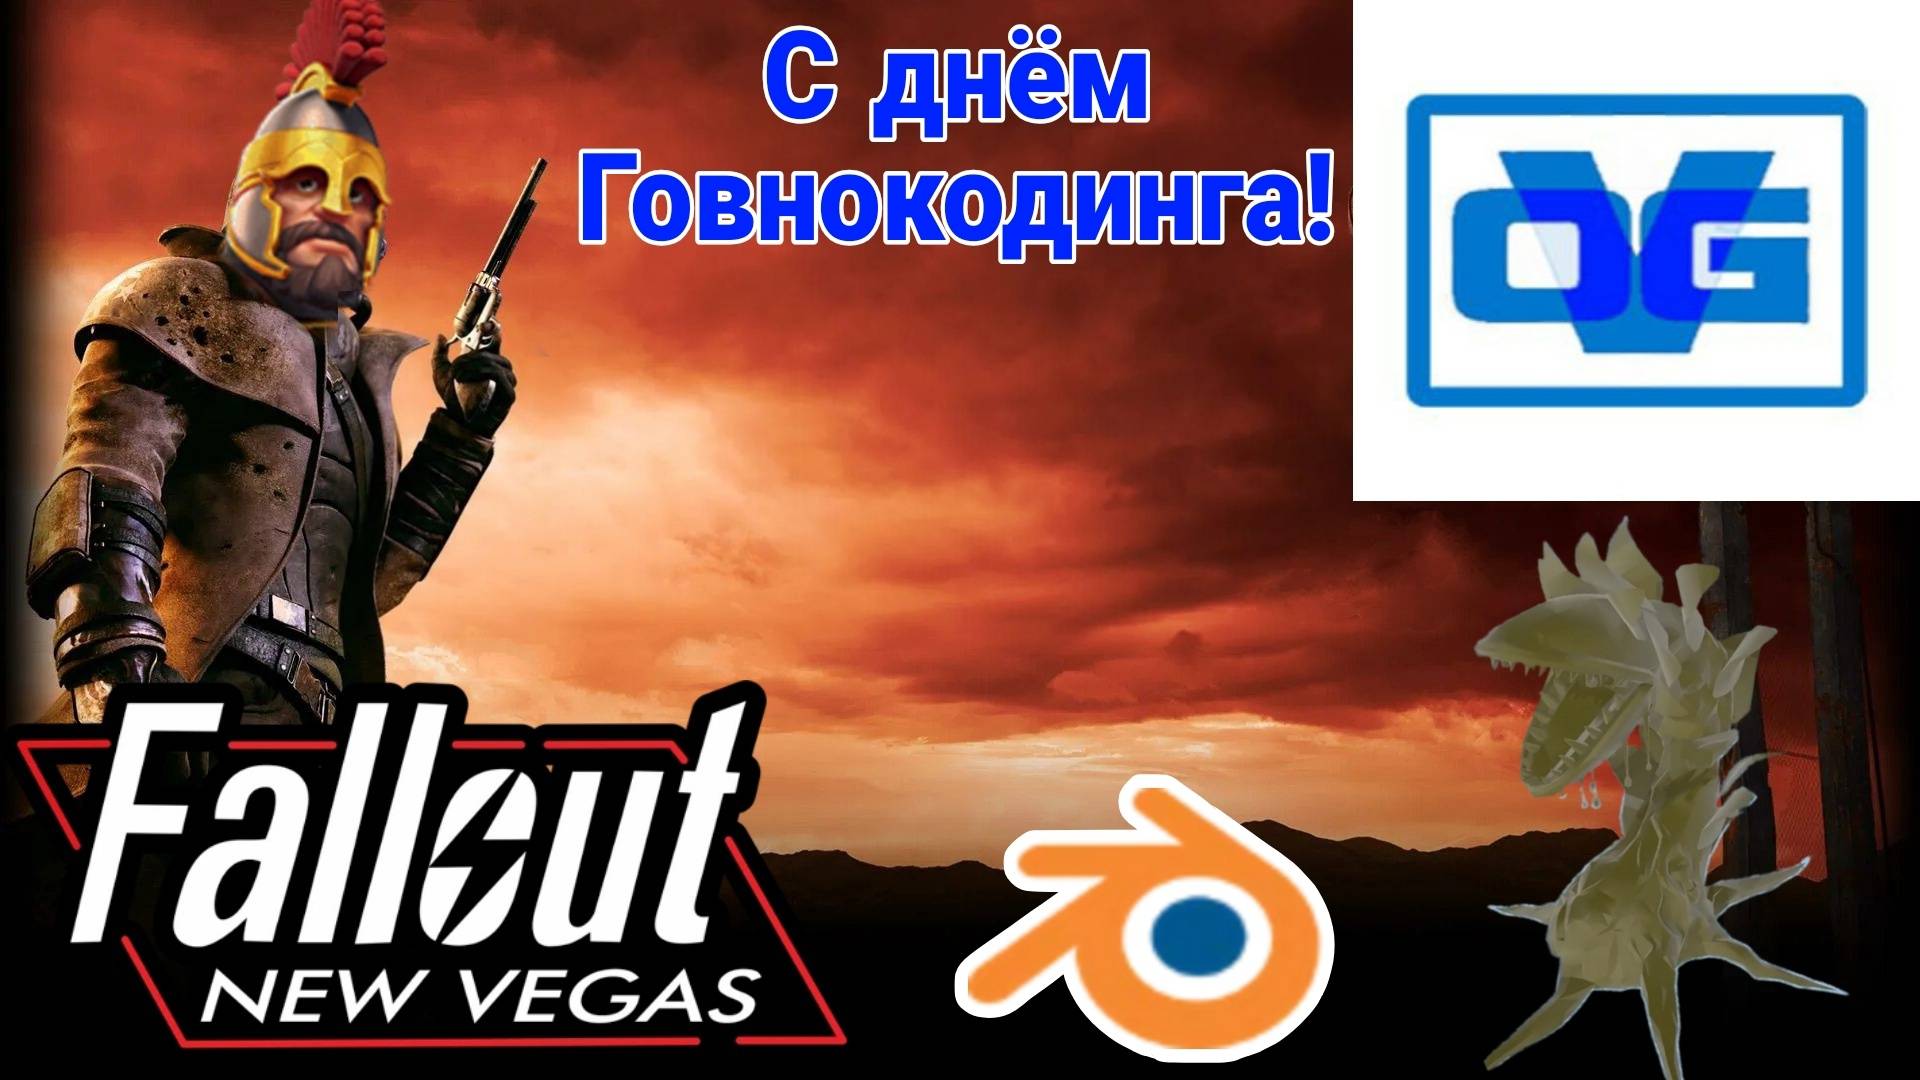 ЛЫСЫЕ ПИСАРИ ОТМЕЧАЮТ ДЕНЬ ГОВНОКОДИНГА В КАЗИНО - КООП-СТРИМ №1 #Fallout: New Vegas